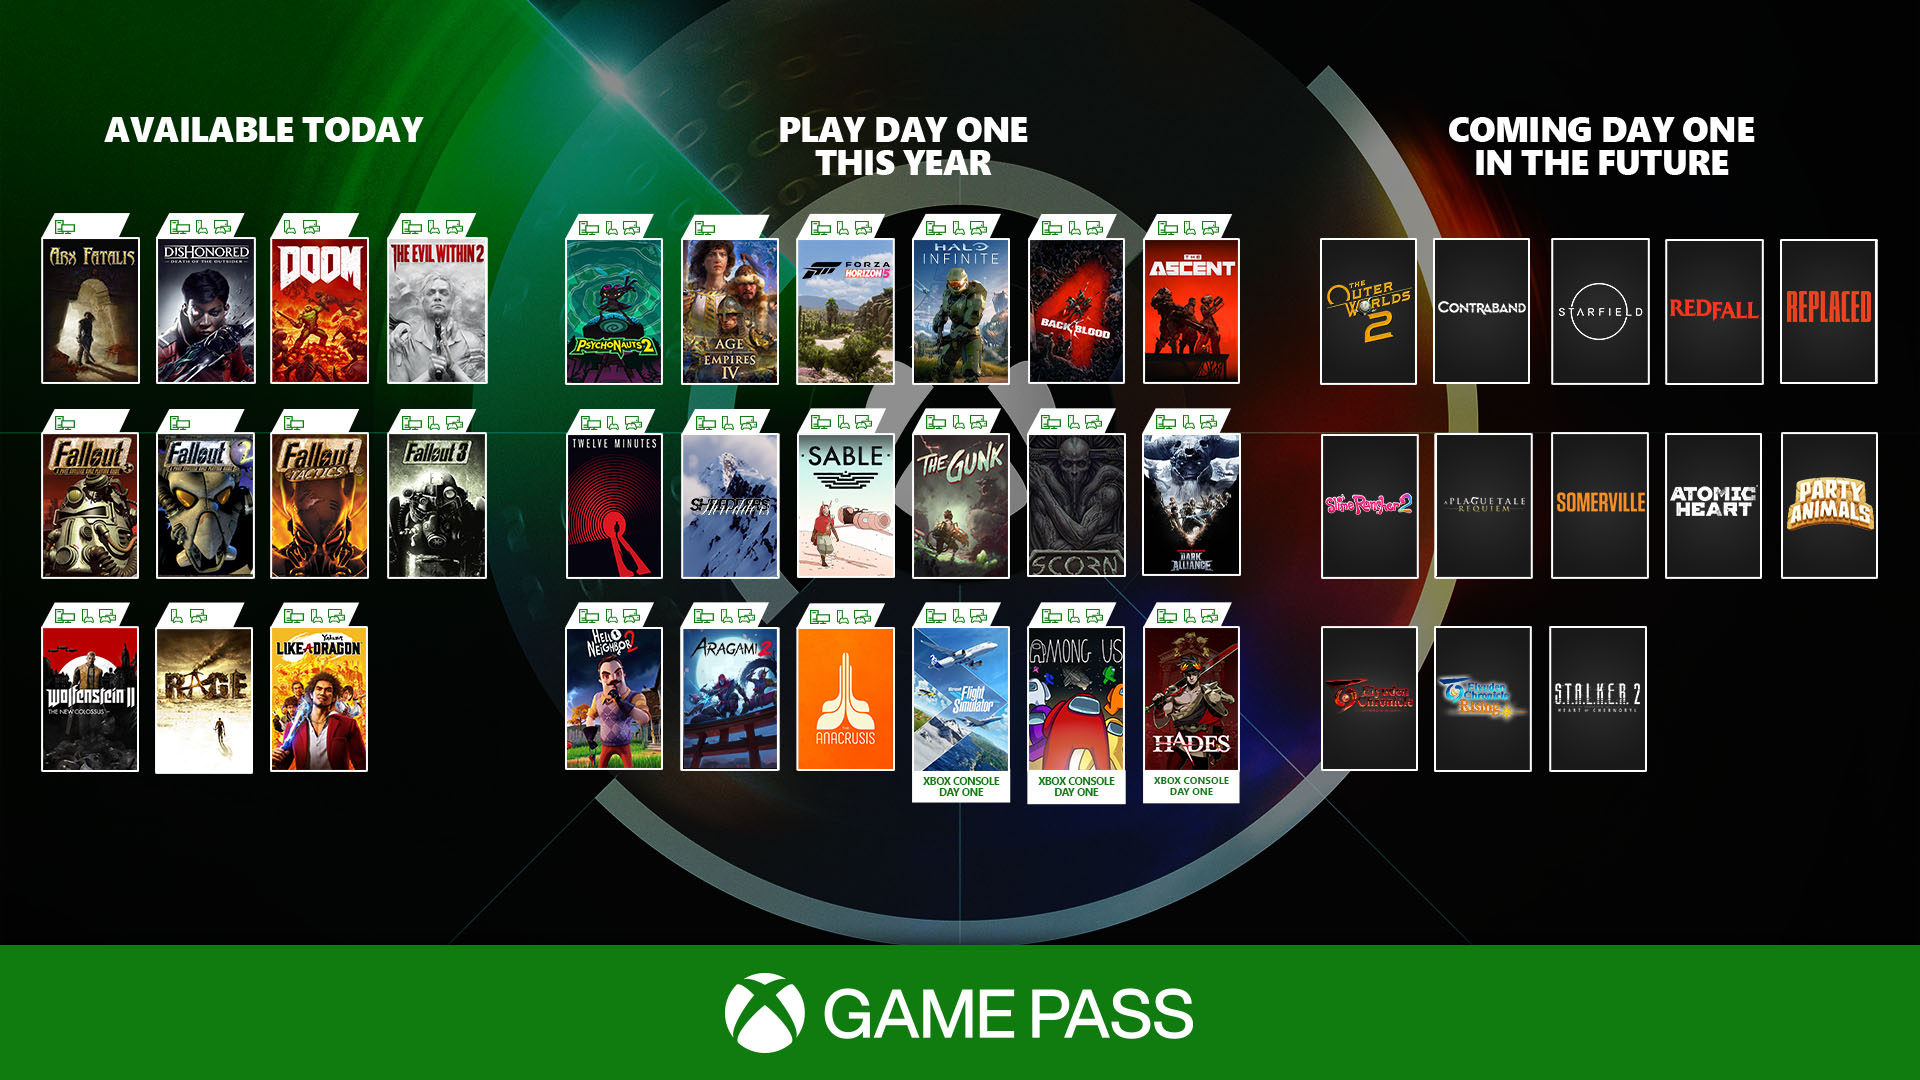 Список игр первого дня в Xbox Game Pass на 2021 и будущие годы - Shazoo